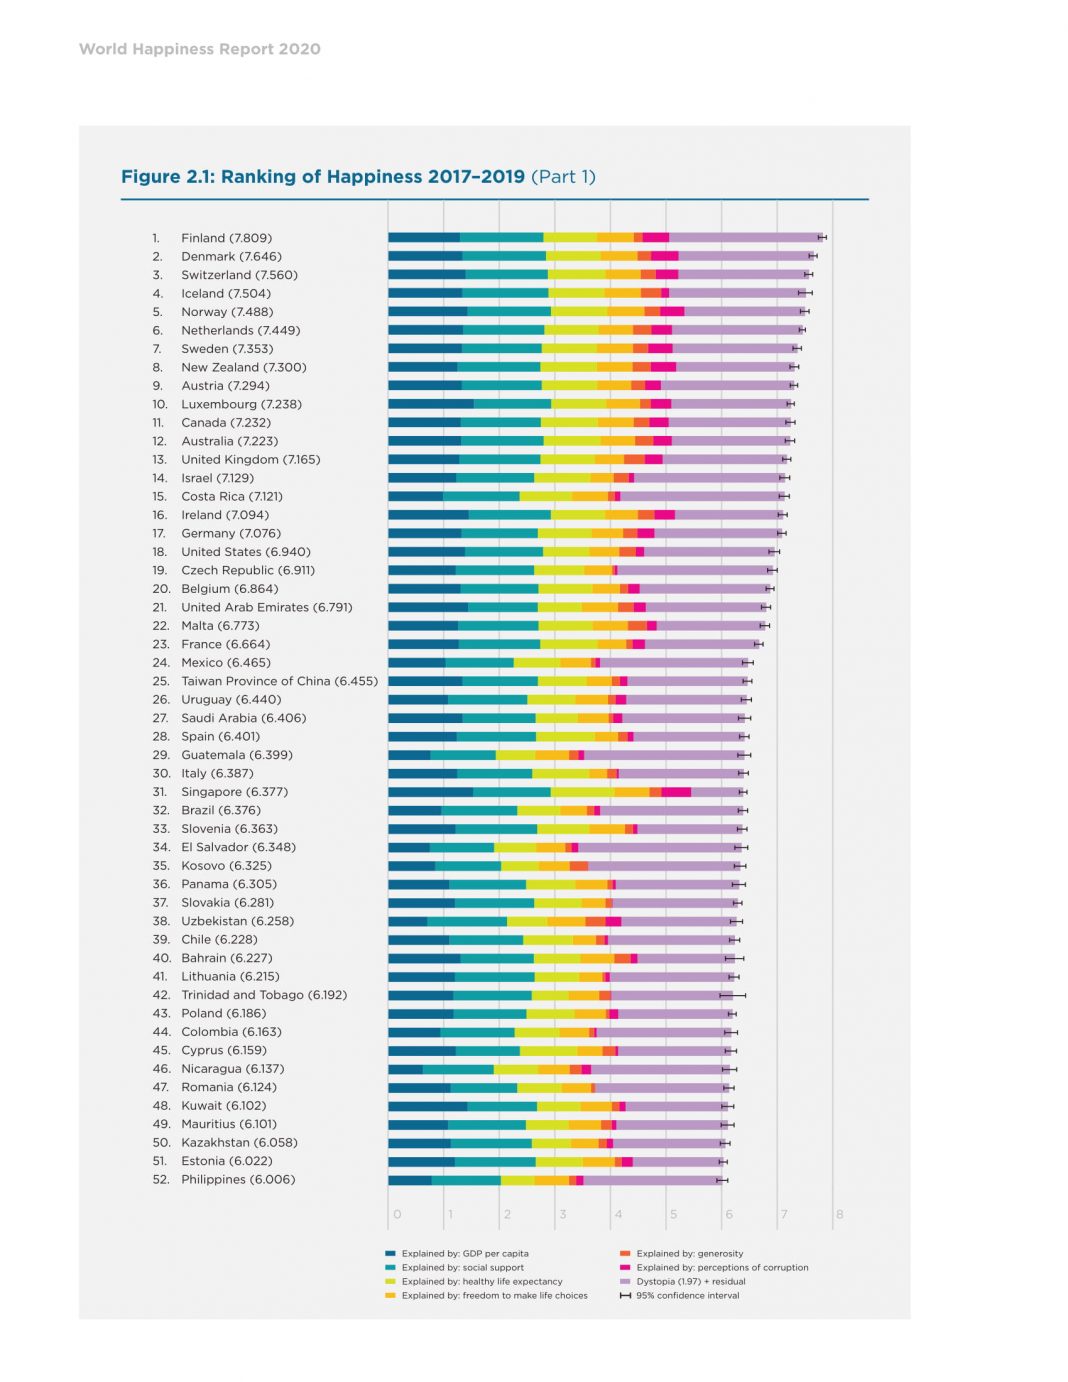 World happiness report. Рейтинг стран по уровню счастья. Рейтинг стран по уровню счастья населения. Уровень счастья в Украине. Украина в рейтинге стран.